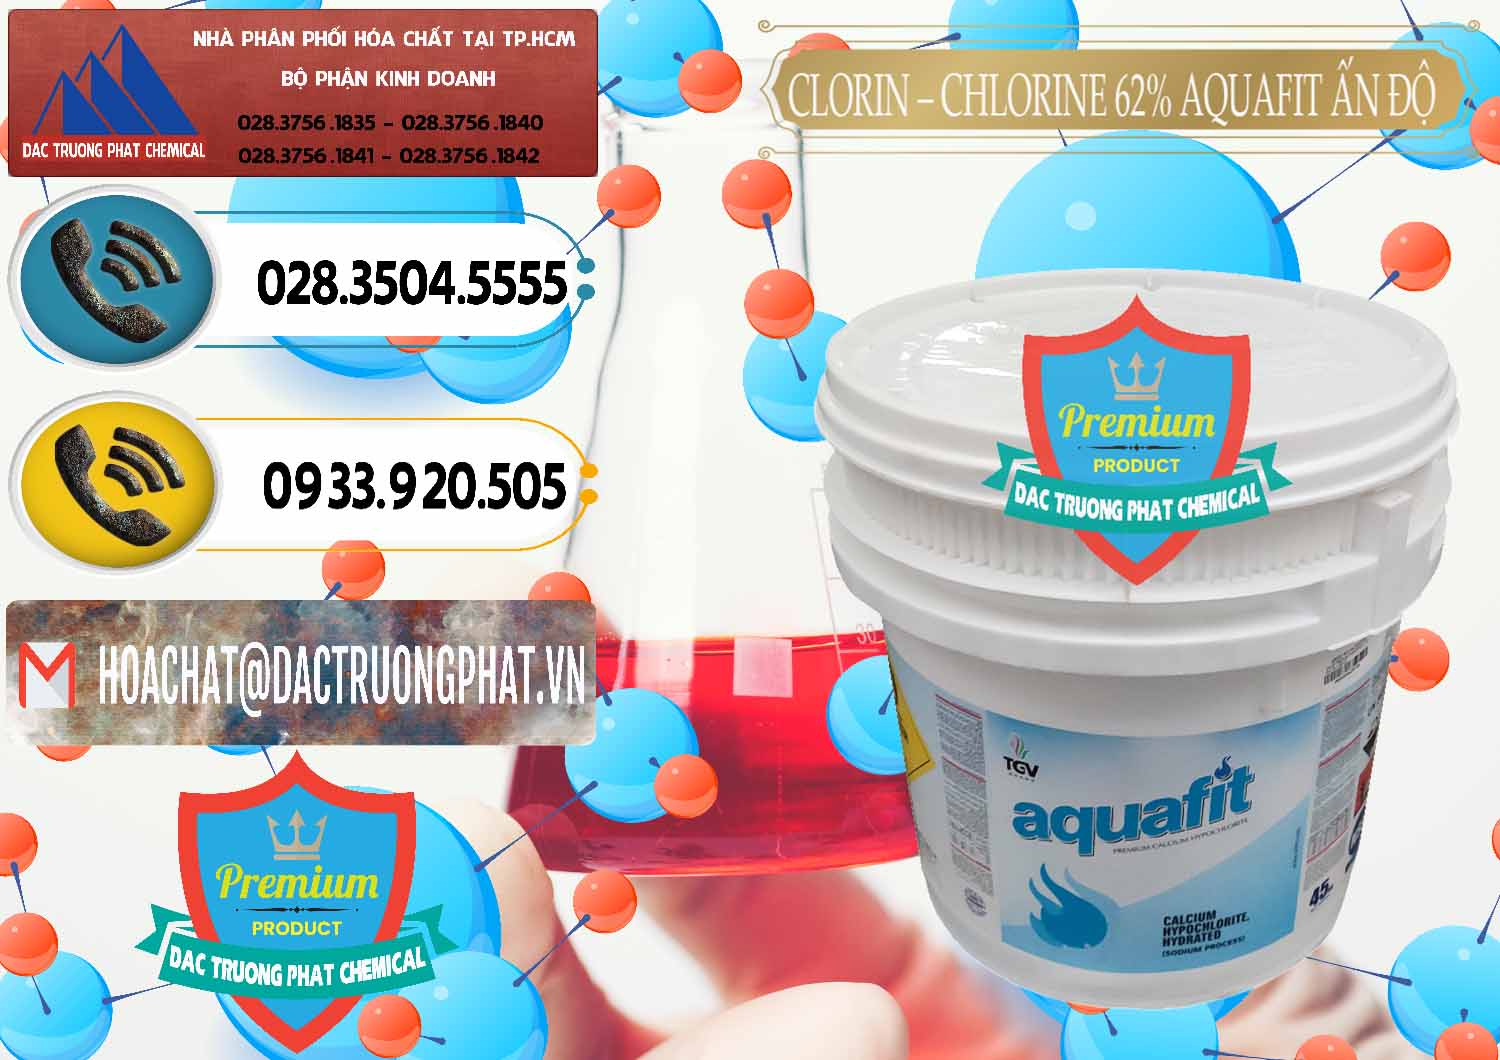 Cty phân phối và bán Clorin - Chlorine 62% Aquafit Thùng Lùn Ấn Độ India - 0057 - Đơn vị chuyên kinh doanh - phân phối hóa chất tại TP.HCM - hoachatdetnhuom.vn